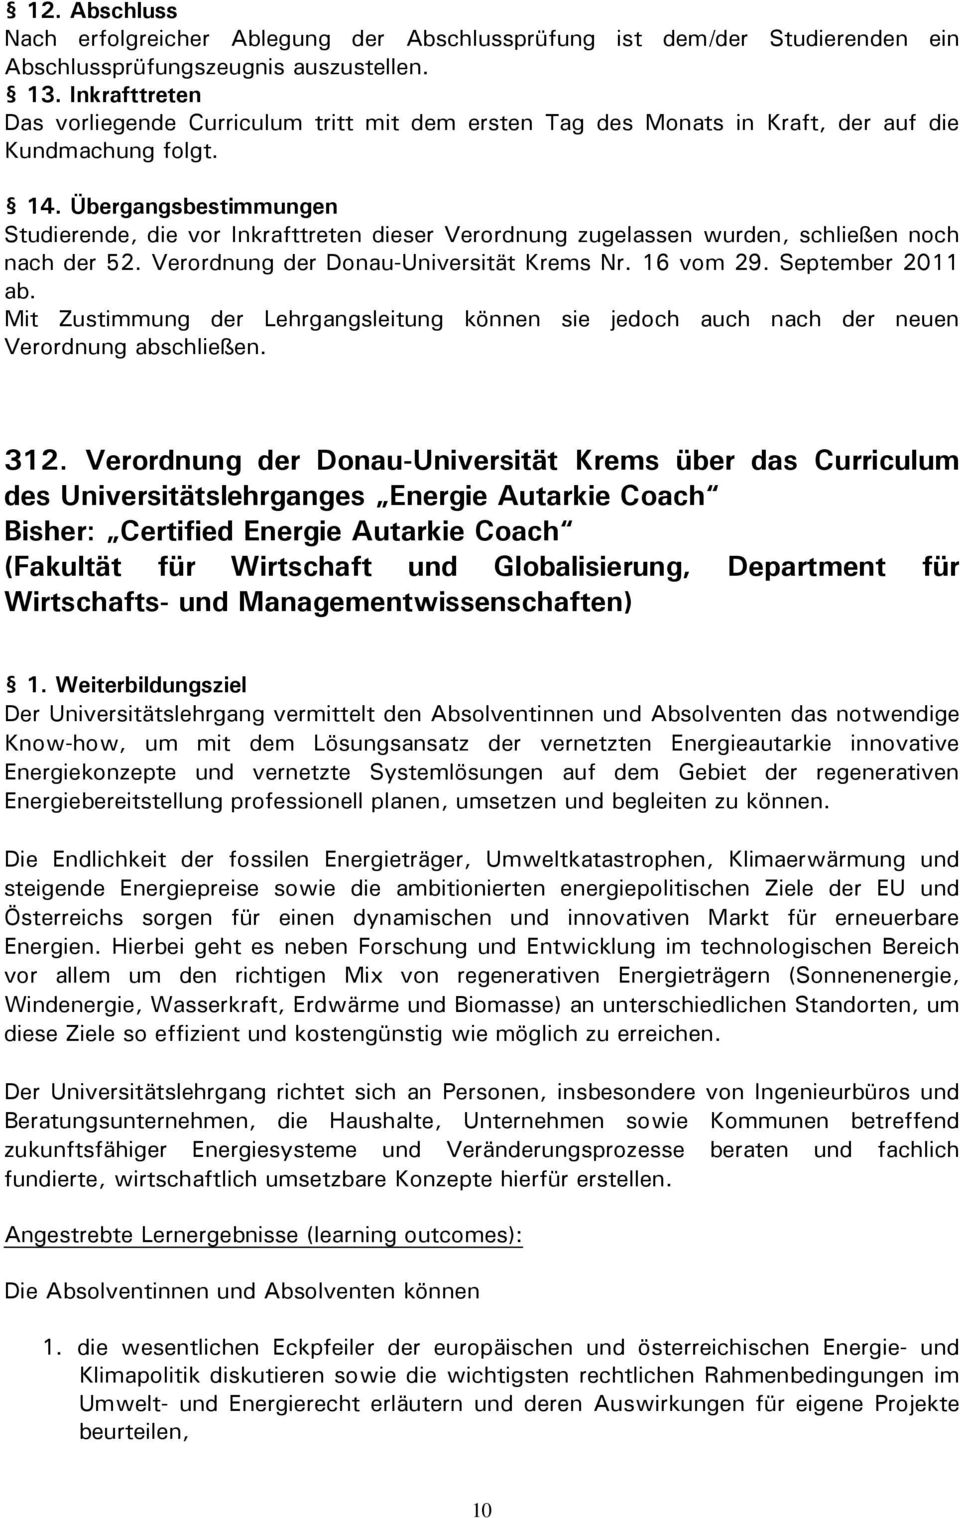 Übergangsbestimmungen Studierende, die vor Inkrafttreten dieser Verordnung zugelassen wurden, schließen noch nach der 52. Verordnung der Donau-Universität Krems Nr. 16 vom 29. September 2011 ab.